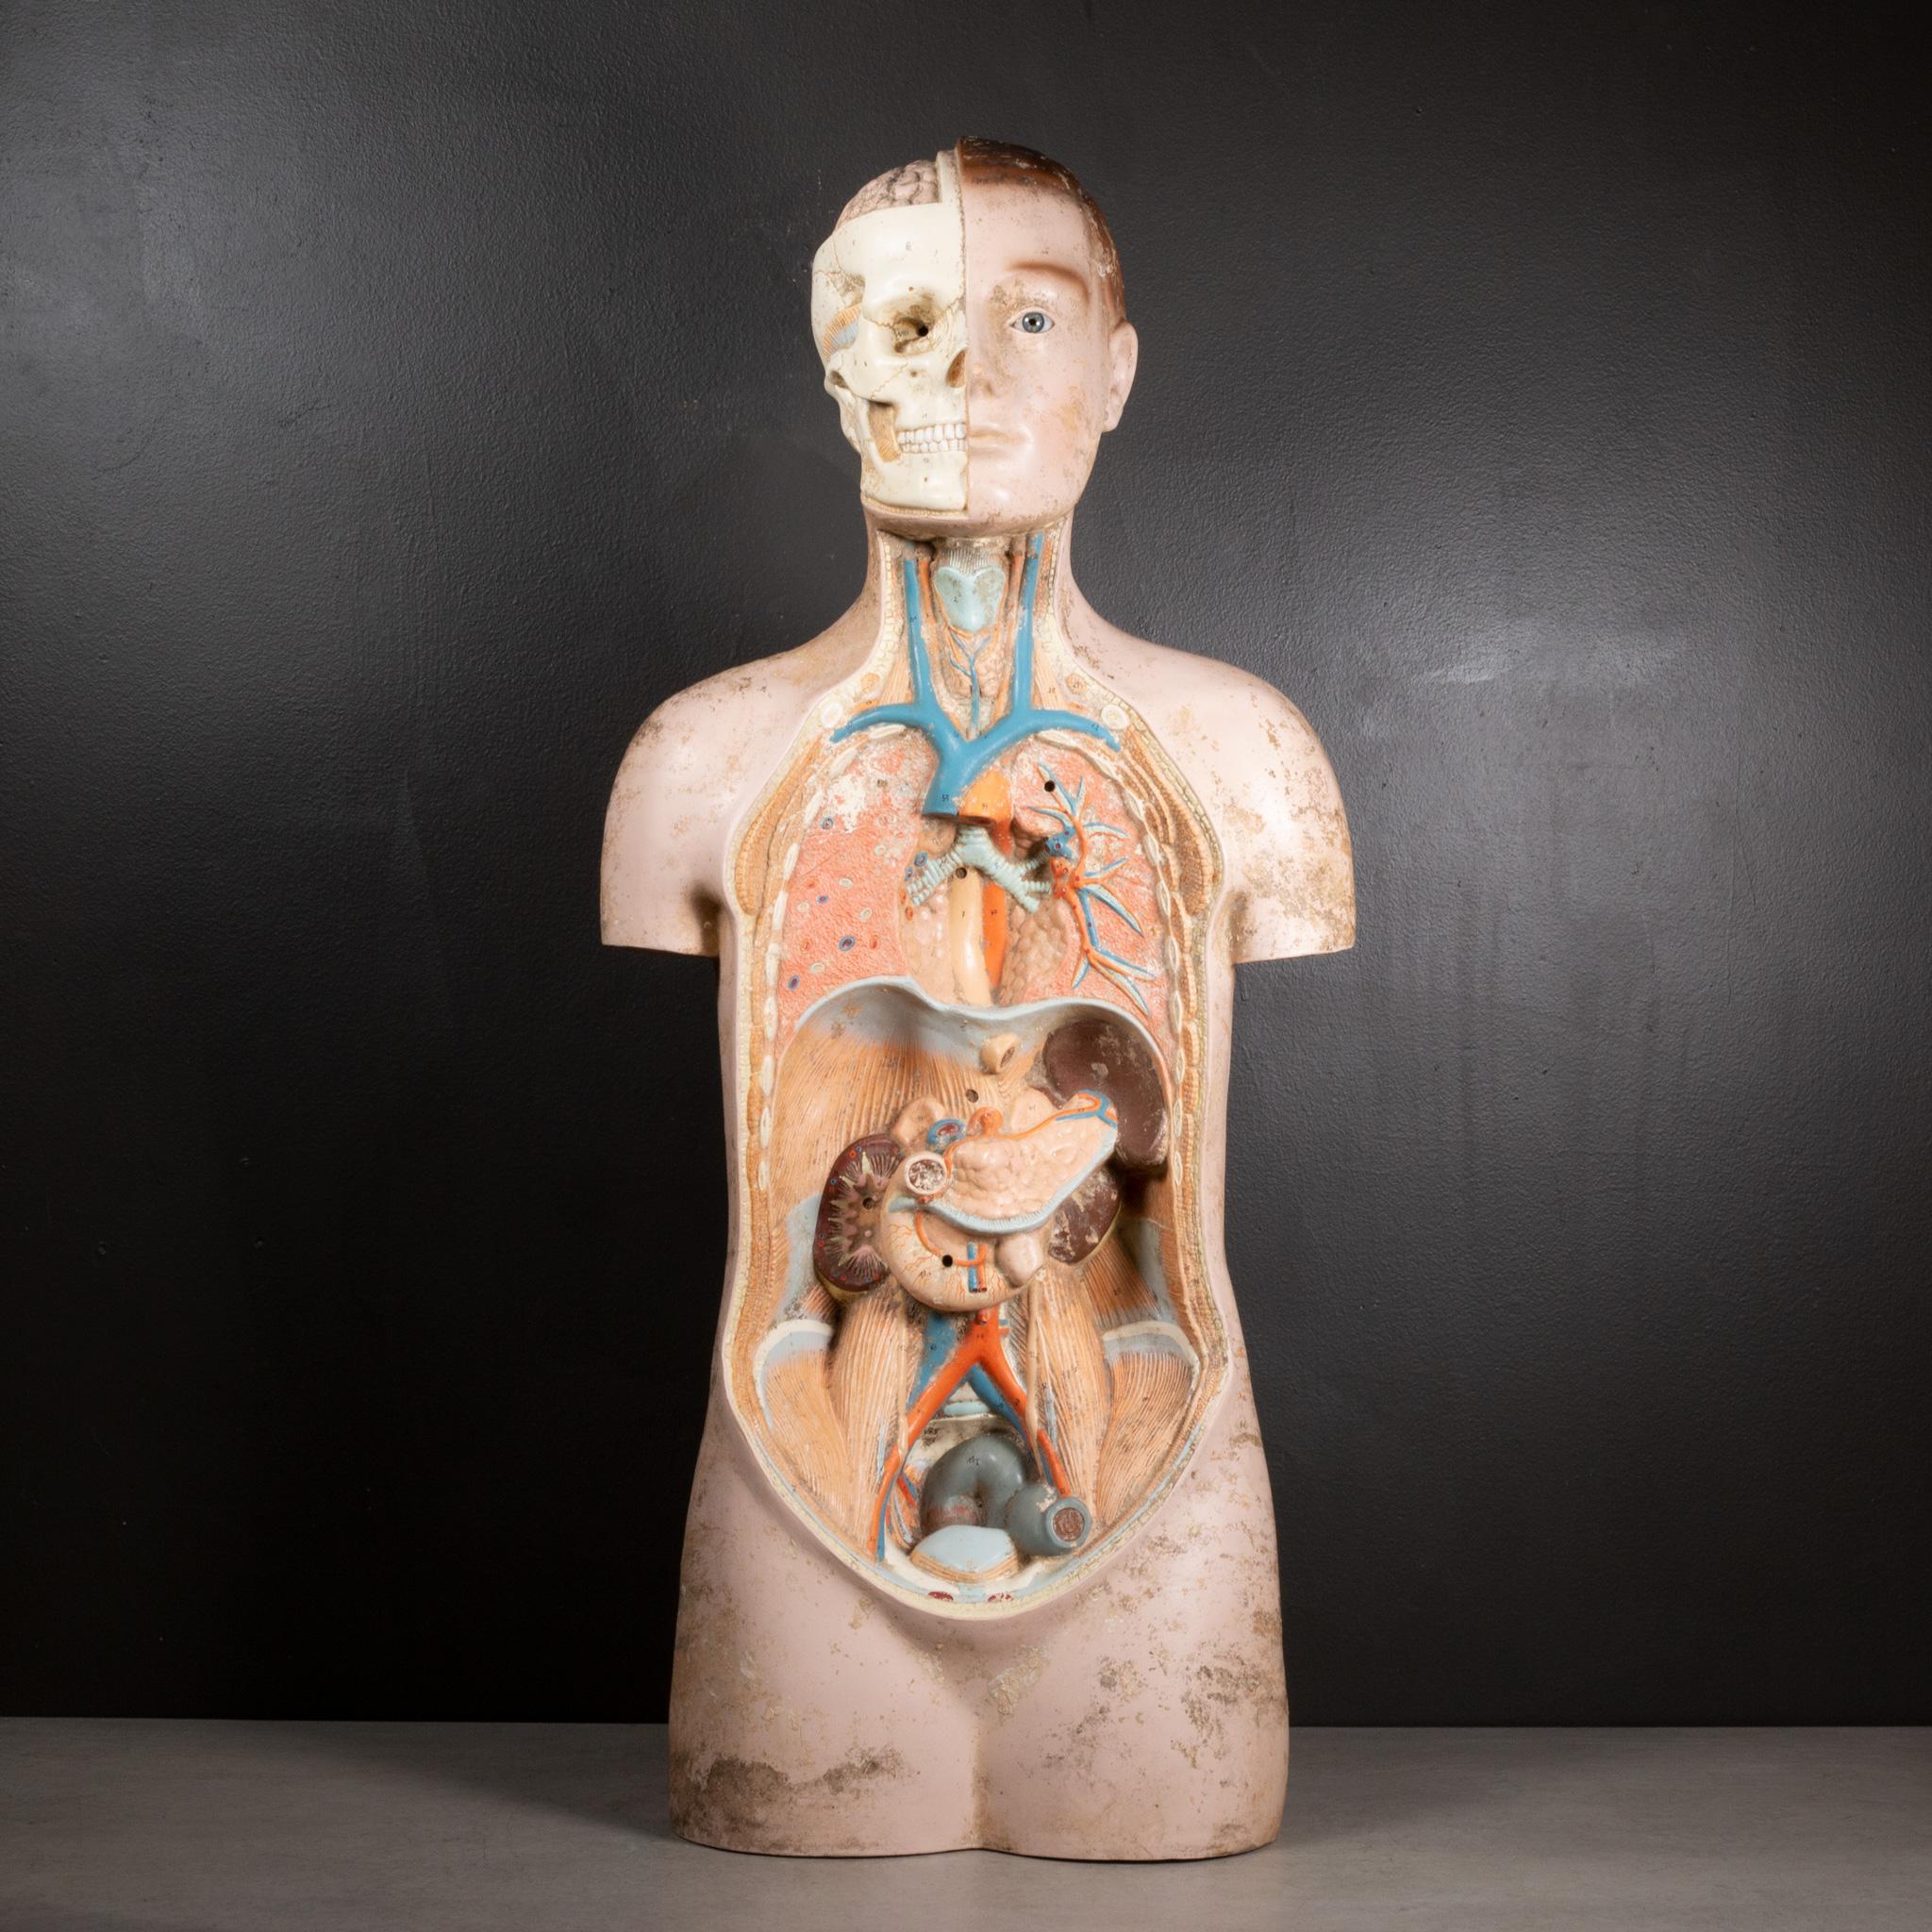 ÜBER

Ein französisches anatomisches medizinisches Lehrgerät für den menschlichen Körper aus der Mitte des letzten Jahrhunderts. Die Organe und Muskeln sind nummeriert und der Schädel ist mit römischen Ziffern versehen. Ein Glasauge. Das Stück hat